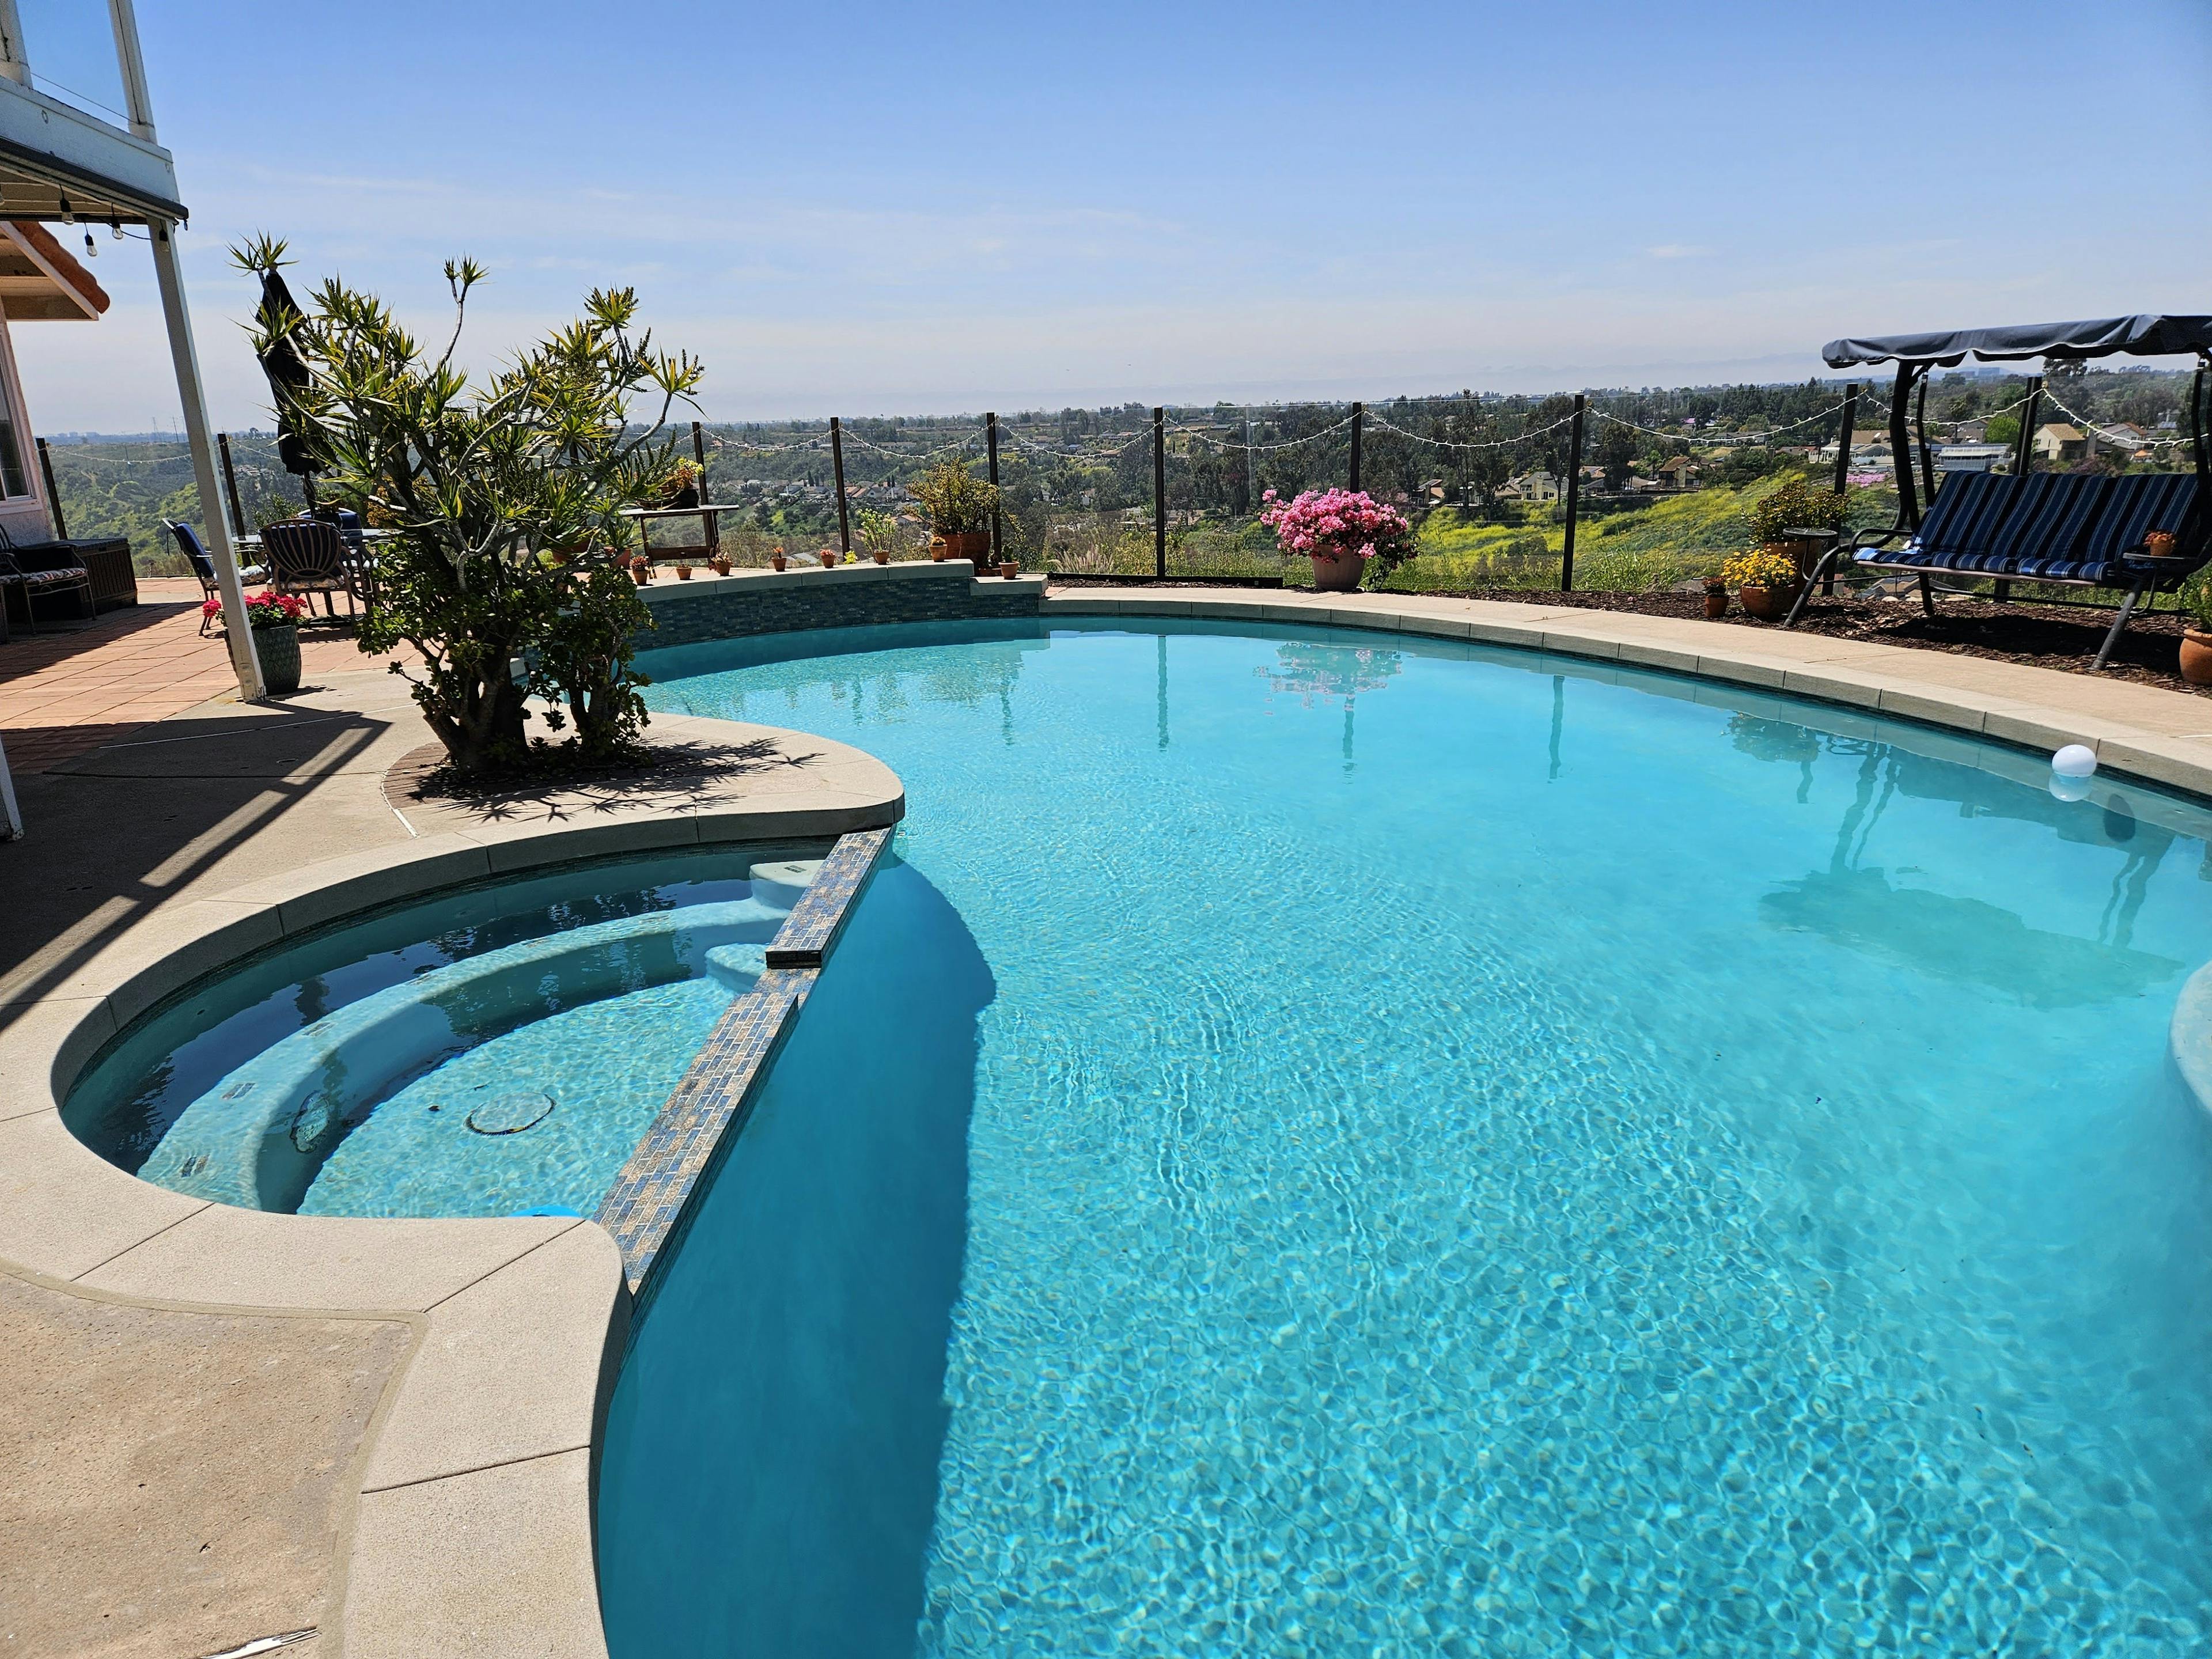 Great Pool, Fantastic Views Of San Diego!